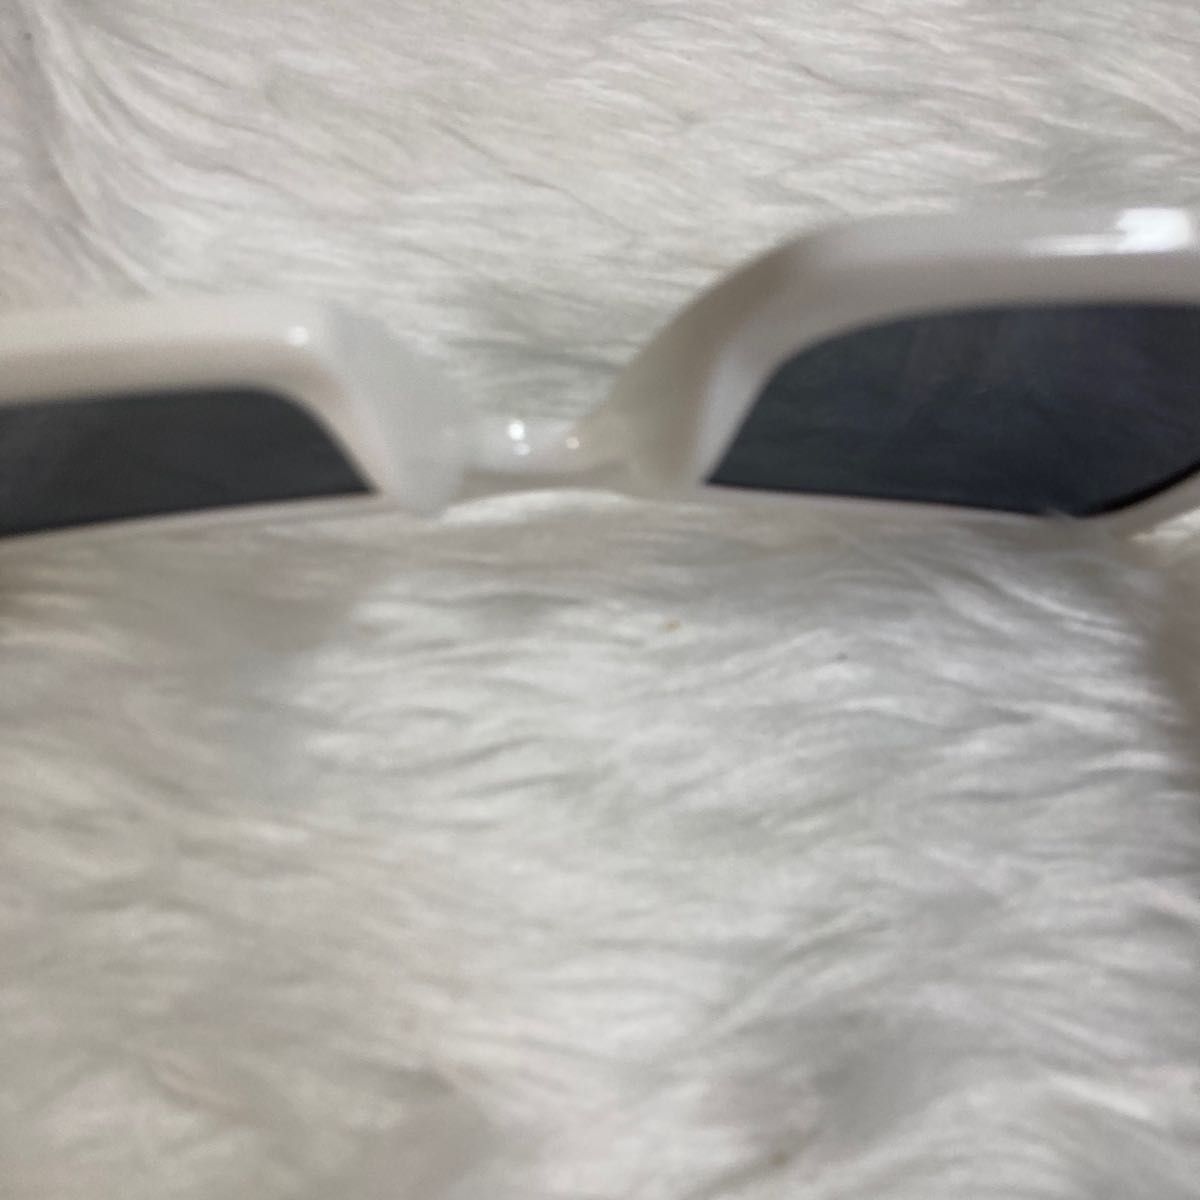 82平方ブラック太セルフレームサングラス眼鏡メガネ長方形レトロ白ホワイト